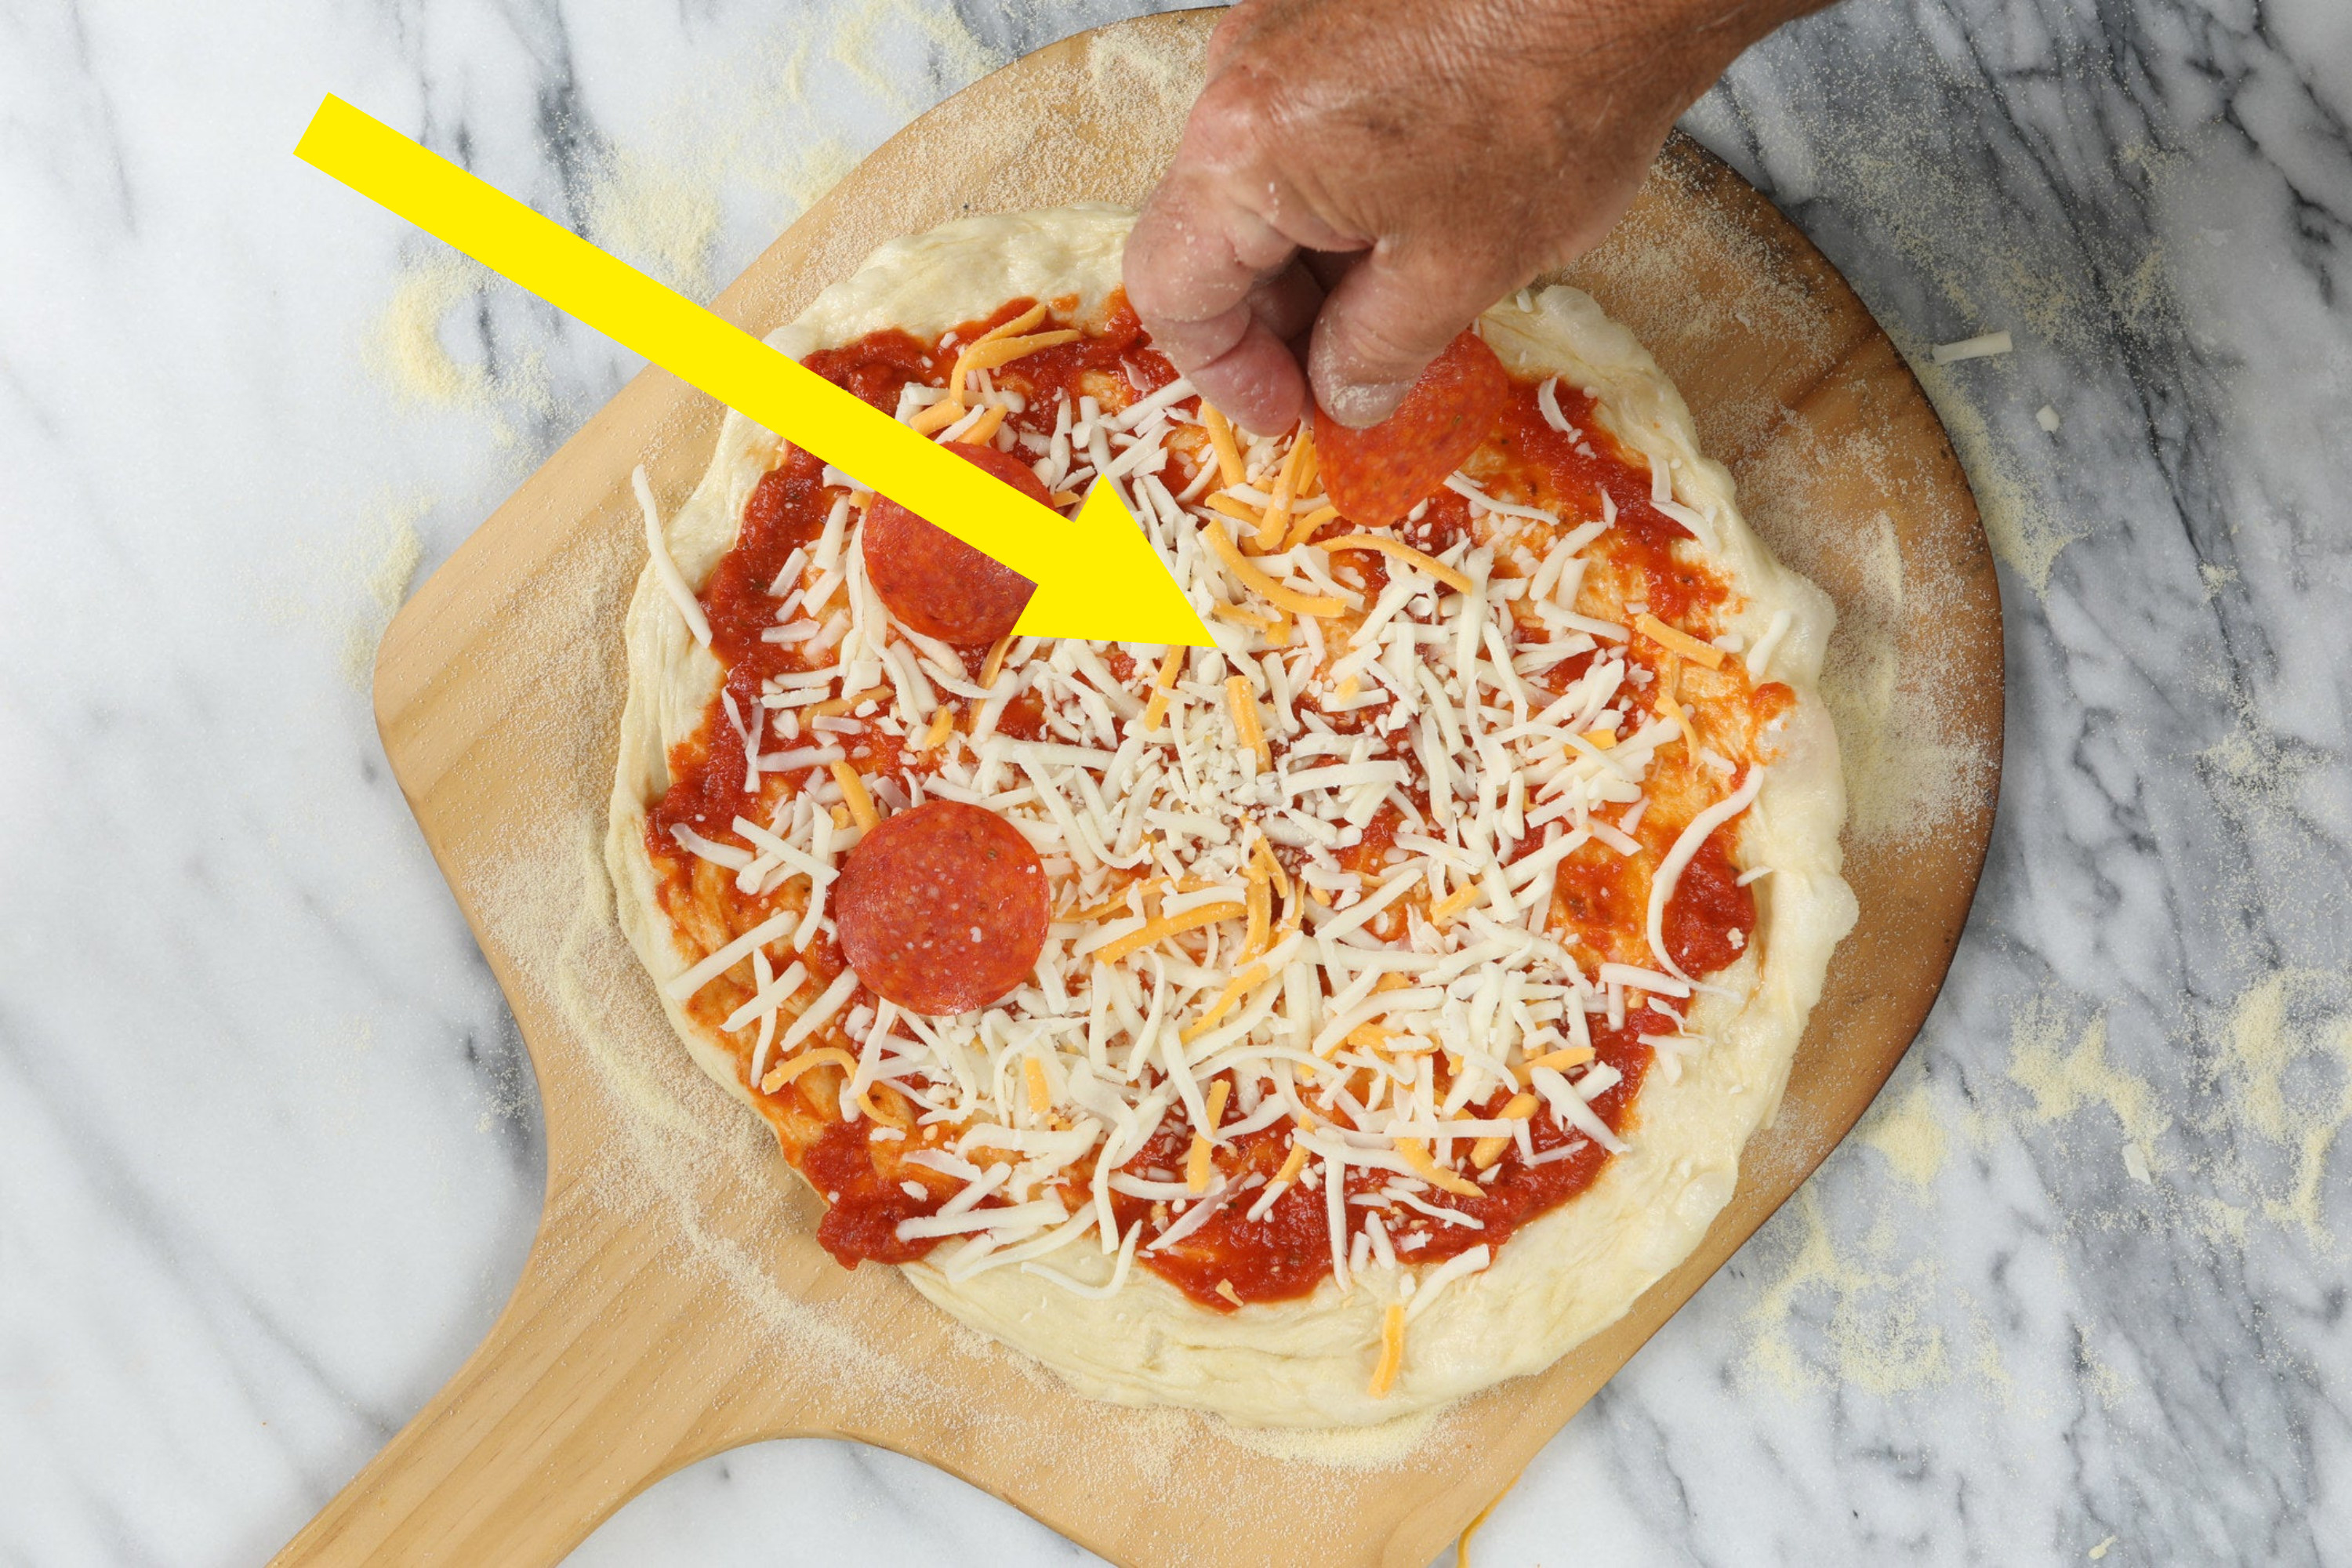 A person preparing pepperoni pizza.